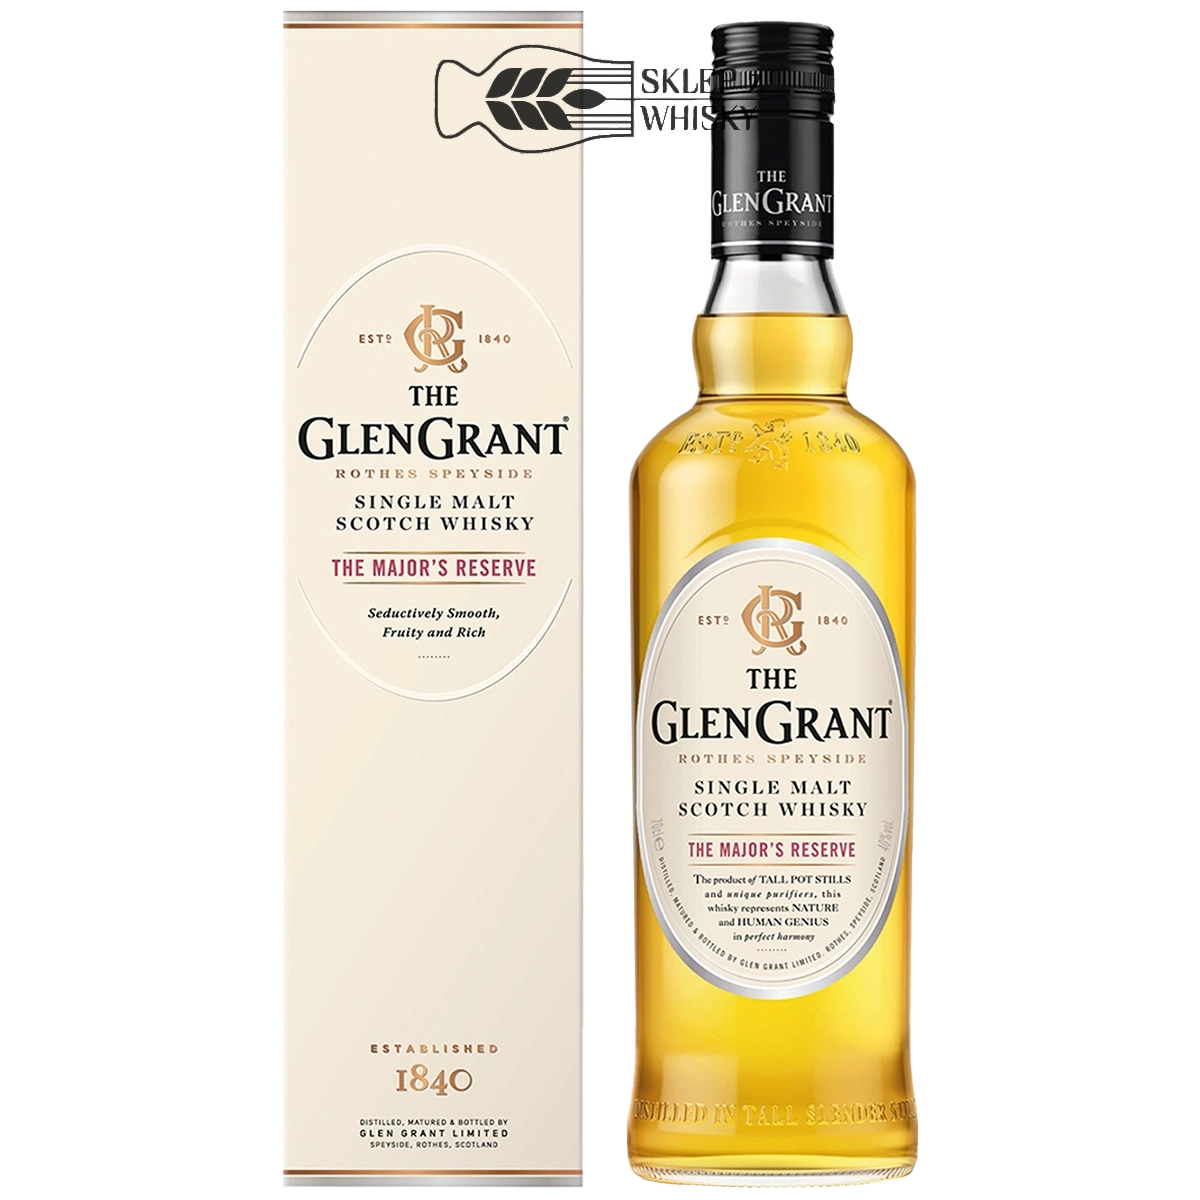 Glen Grant The Major's Reserve - szkocka whisky single malt z regionu Speyside, 700 ml, w pudełku